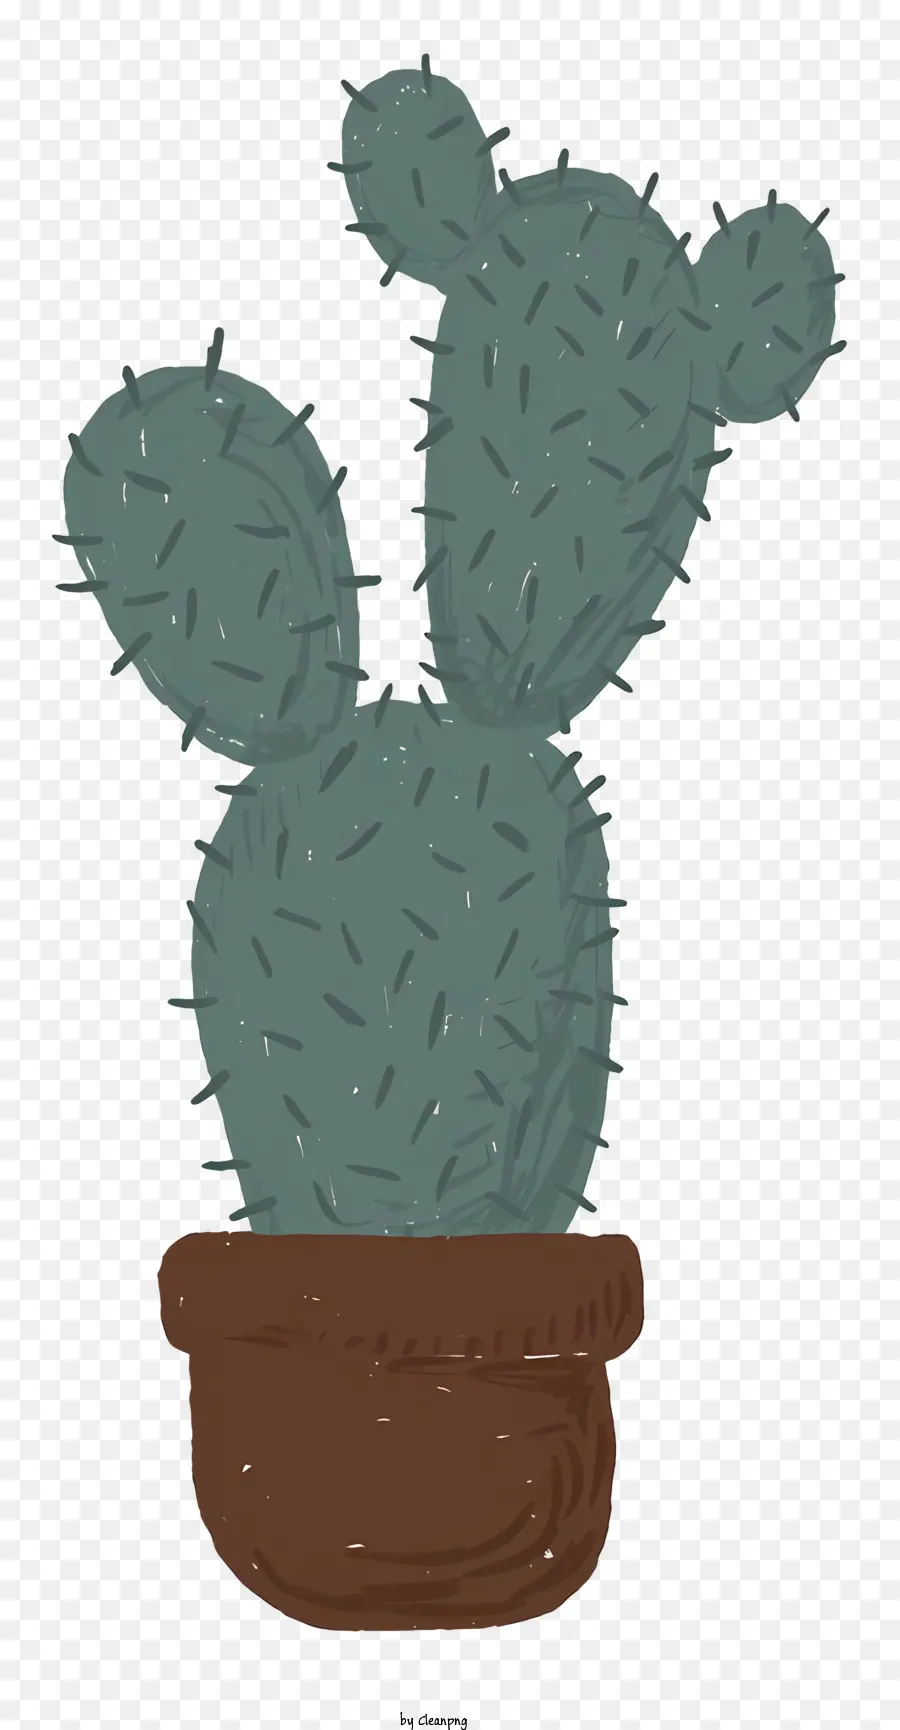 Kleine Kaktuspflanze Kaktus im Topf Drei Spikes Kaktus abgerundet Kaktusgrün Kaktuspflanze - Blaue Bleistiftzeichnung von kleinem Kaktus im Topf